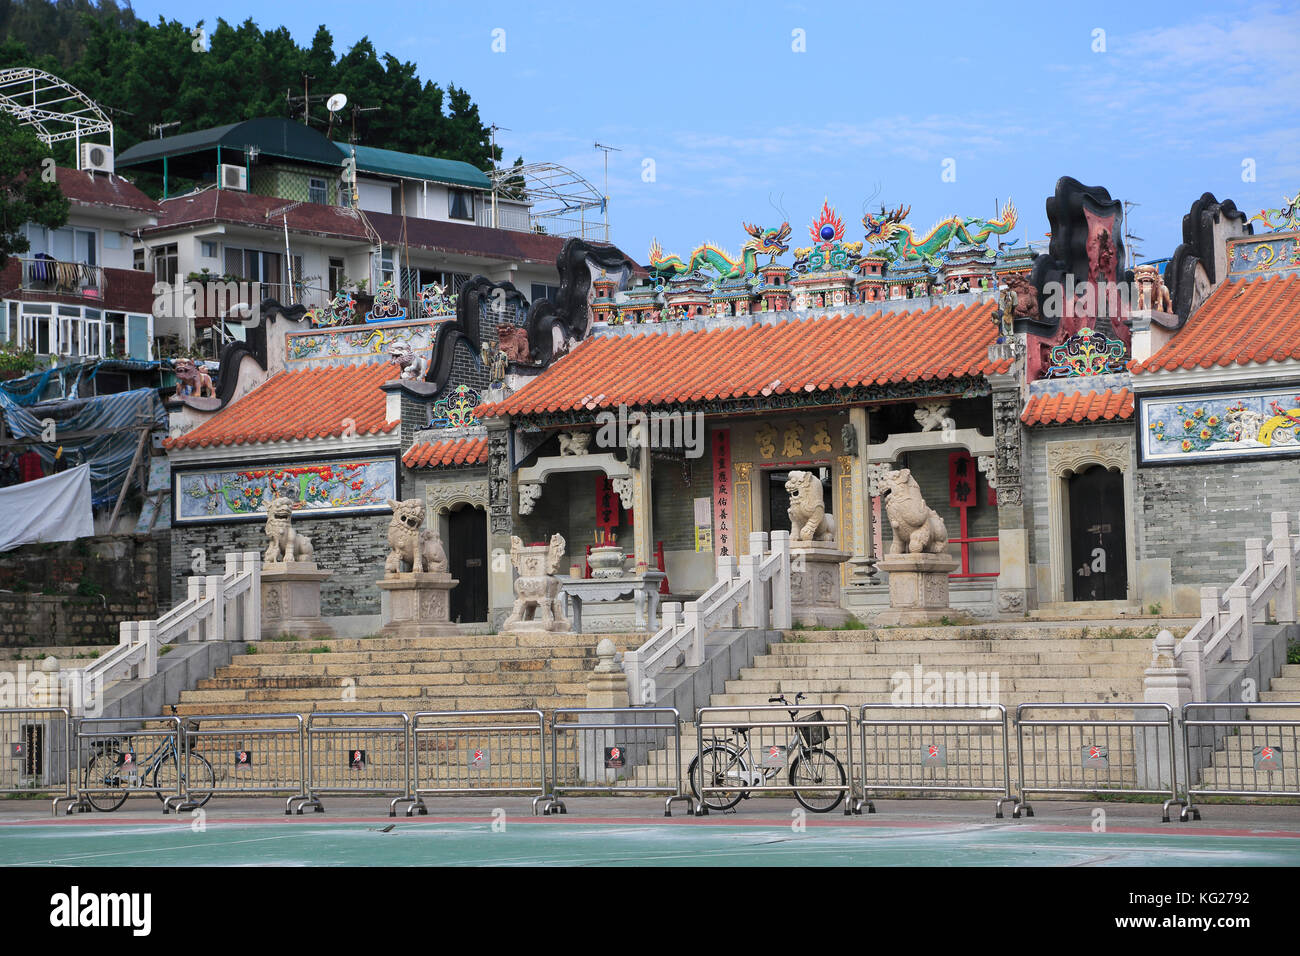 Pak Tai Temple, également connu sous le nom de Yuk Hui Temple, Cheung Chau Island, Hong Kong, Chine, Asie Banque D'Images